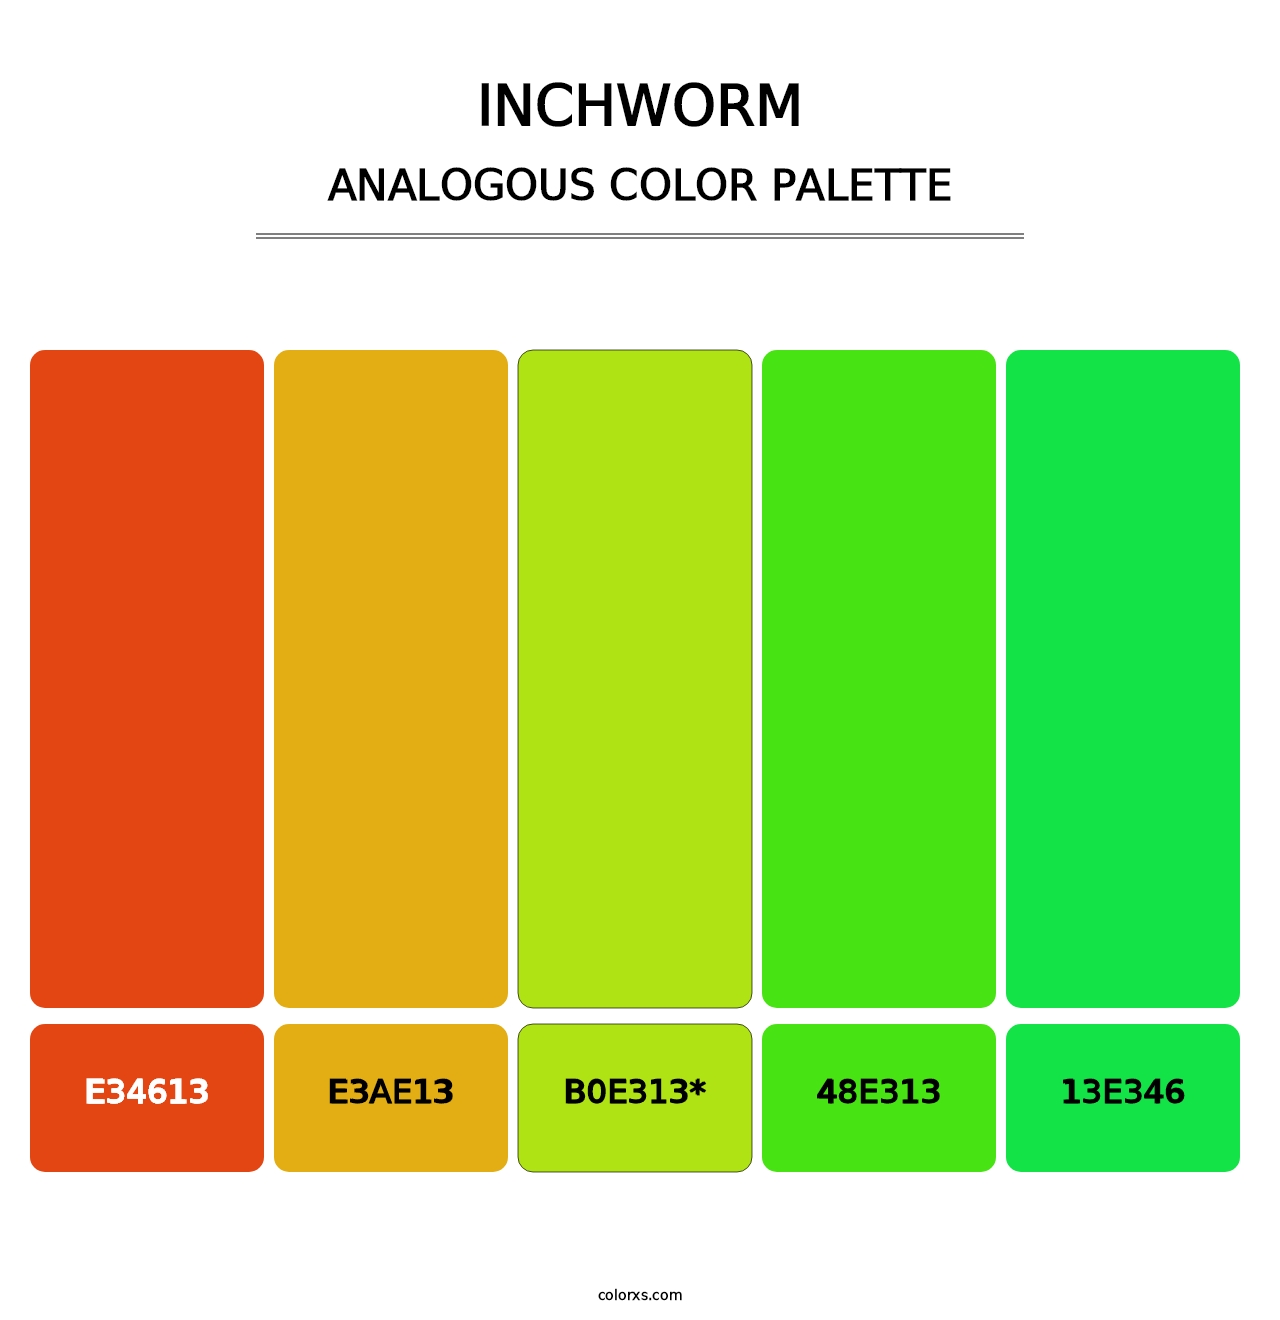 Inchworm - Analogous Color Palette